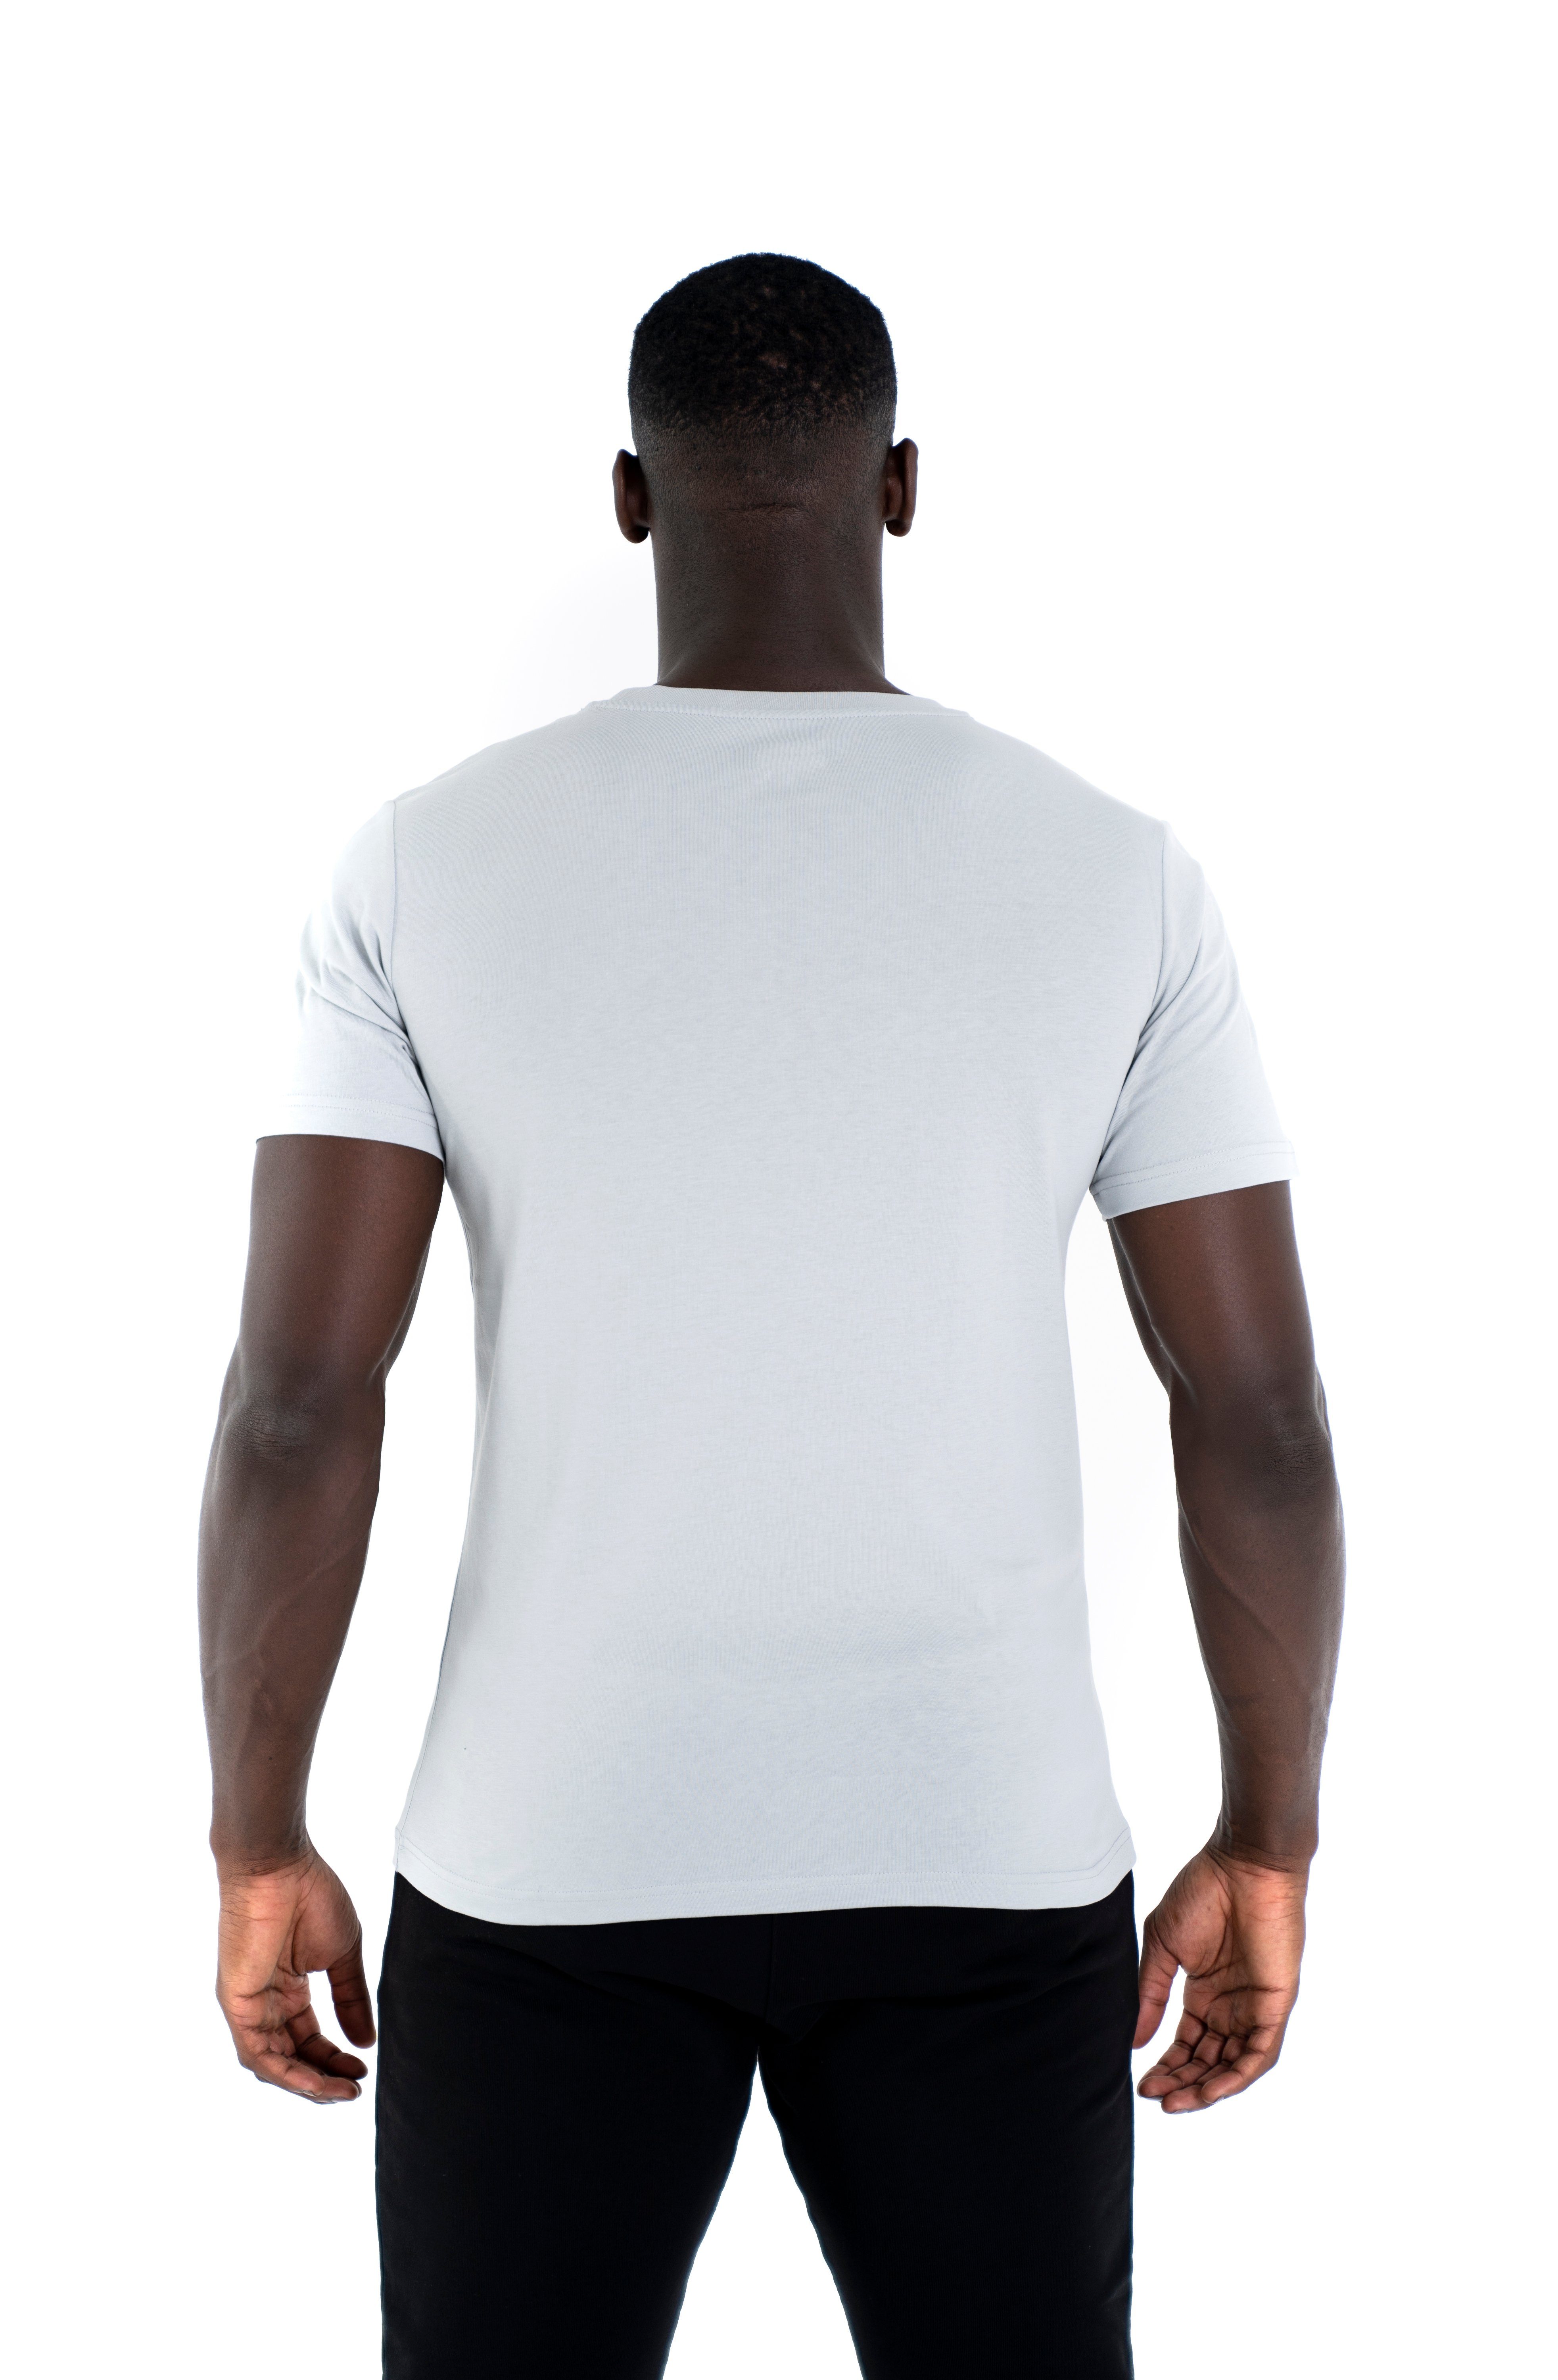 Universum Sportwear T-Shirt Modern grau Cotton 100% Shirt C-Neck Rundhalsausschnitt, Baumwoll